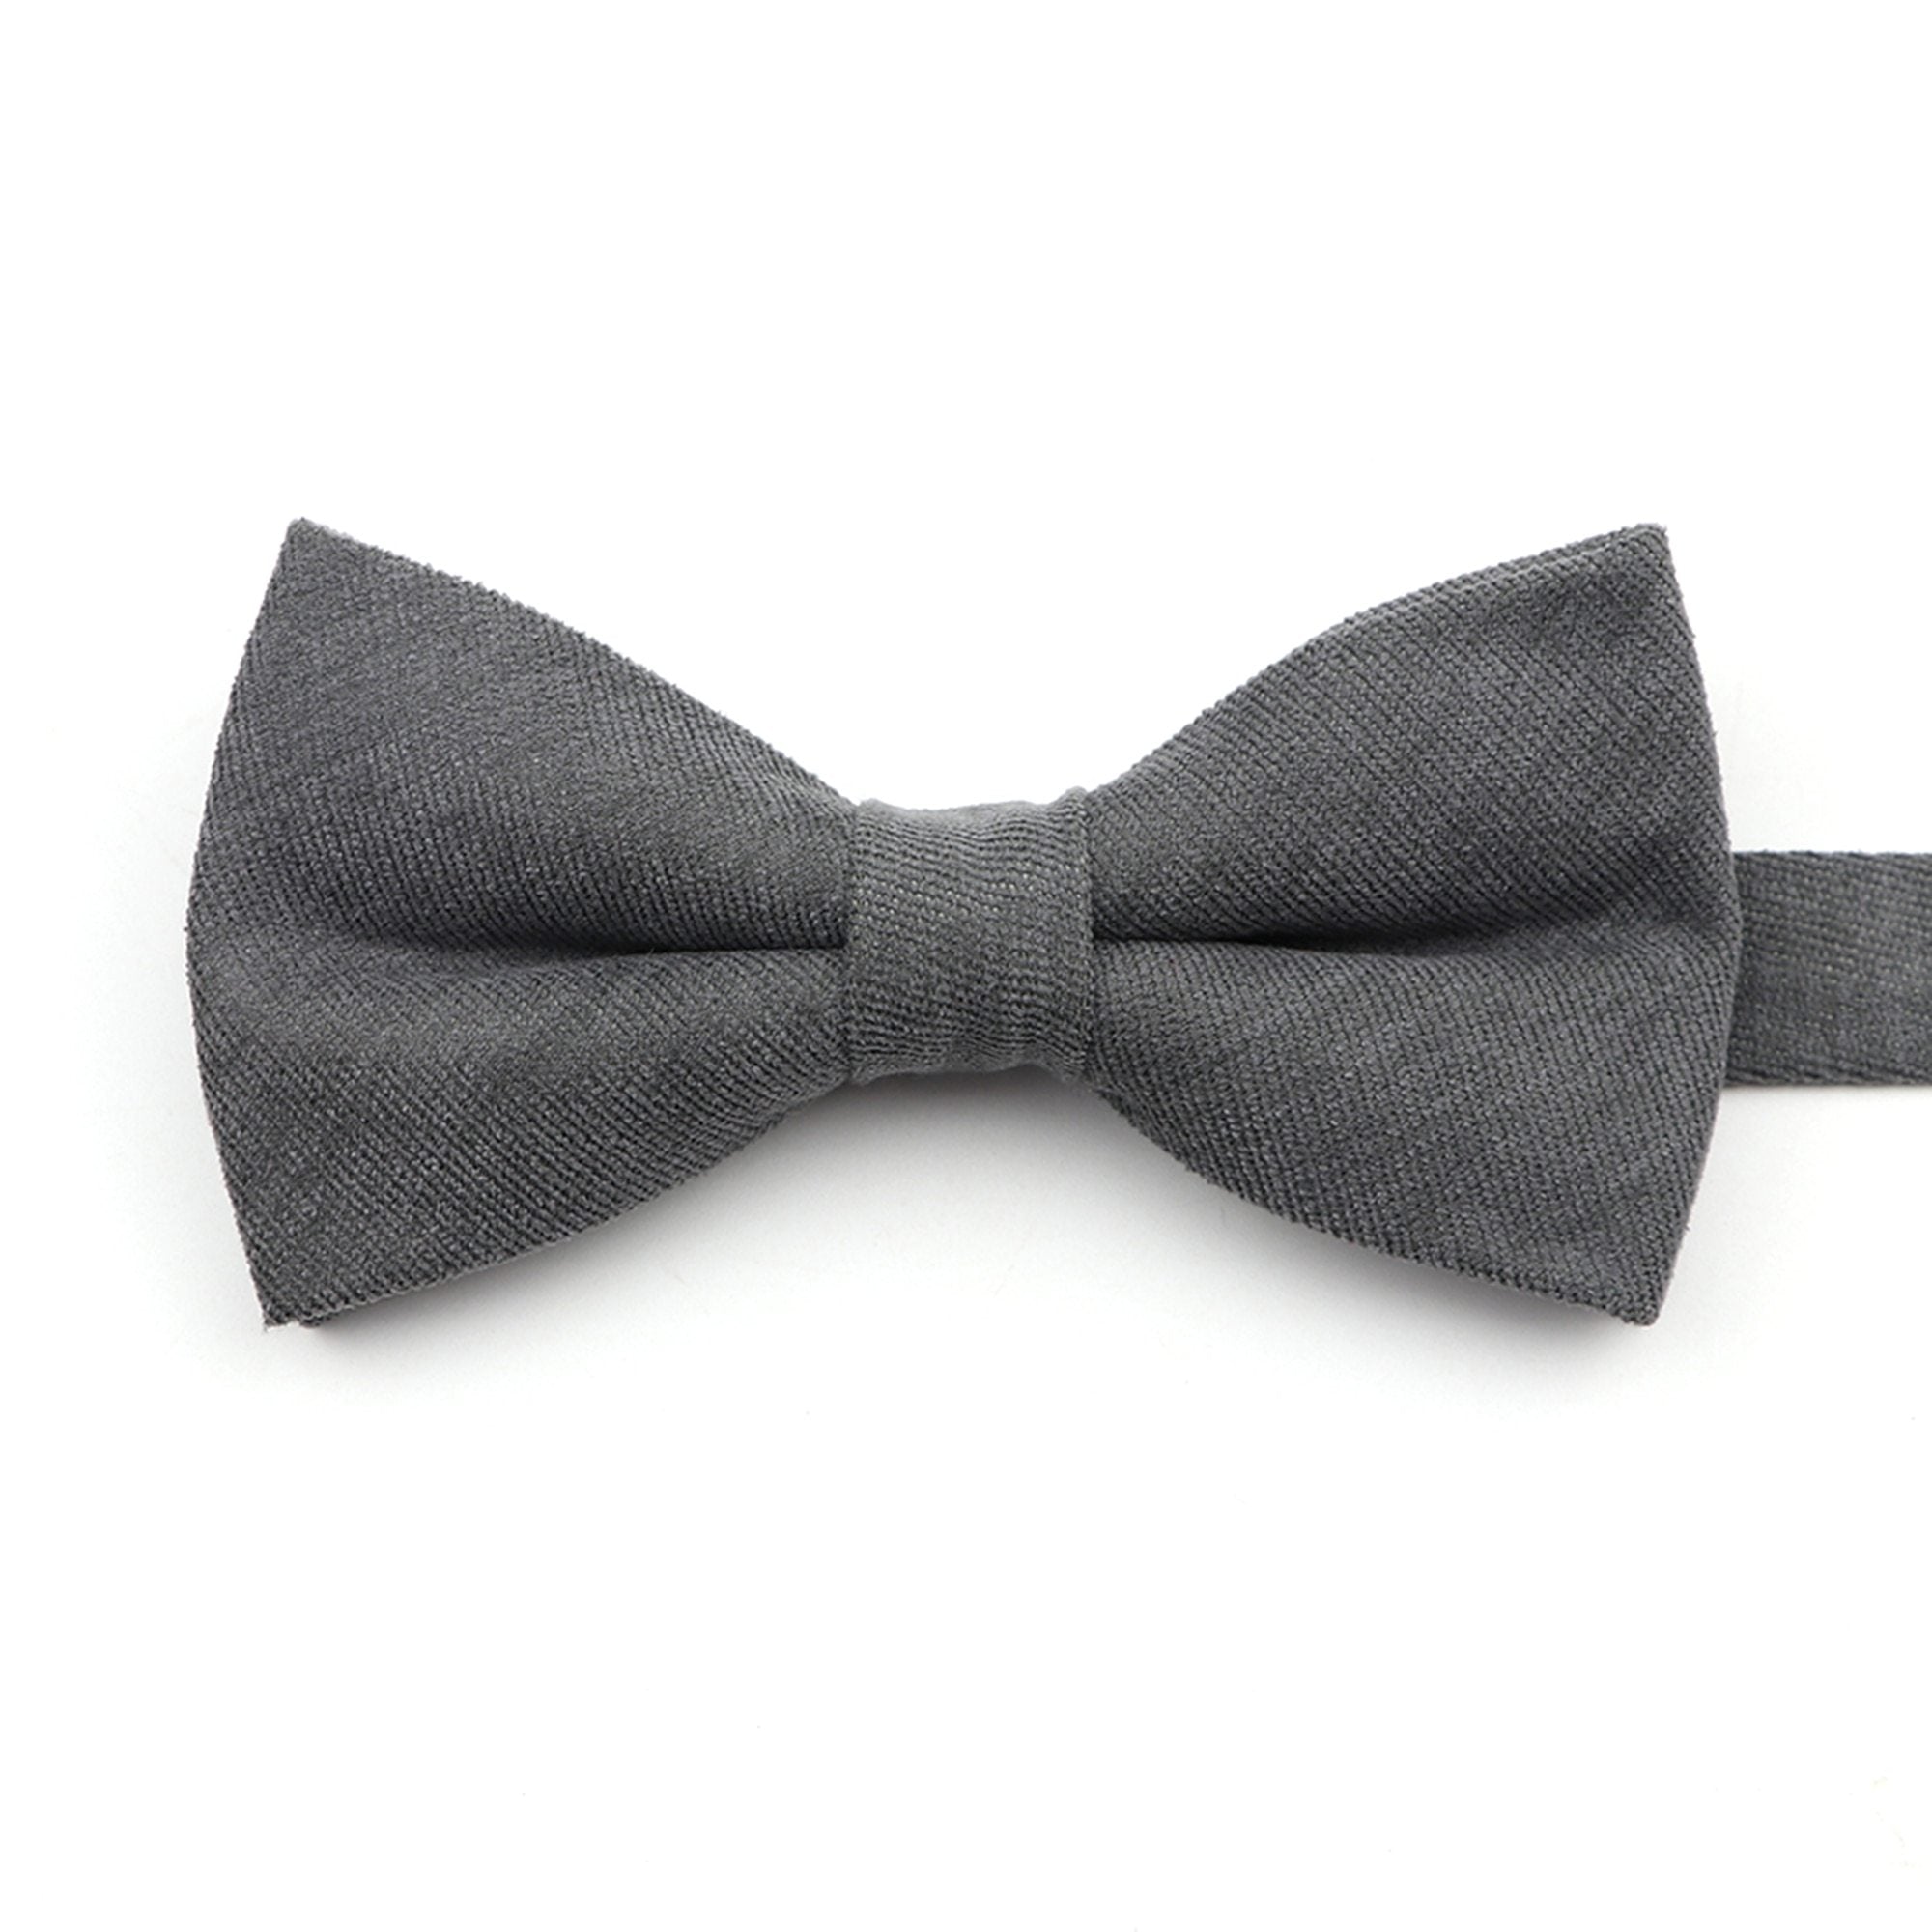 Solid Soft Cotton Bow Tie Pre-Tied GR Grey 